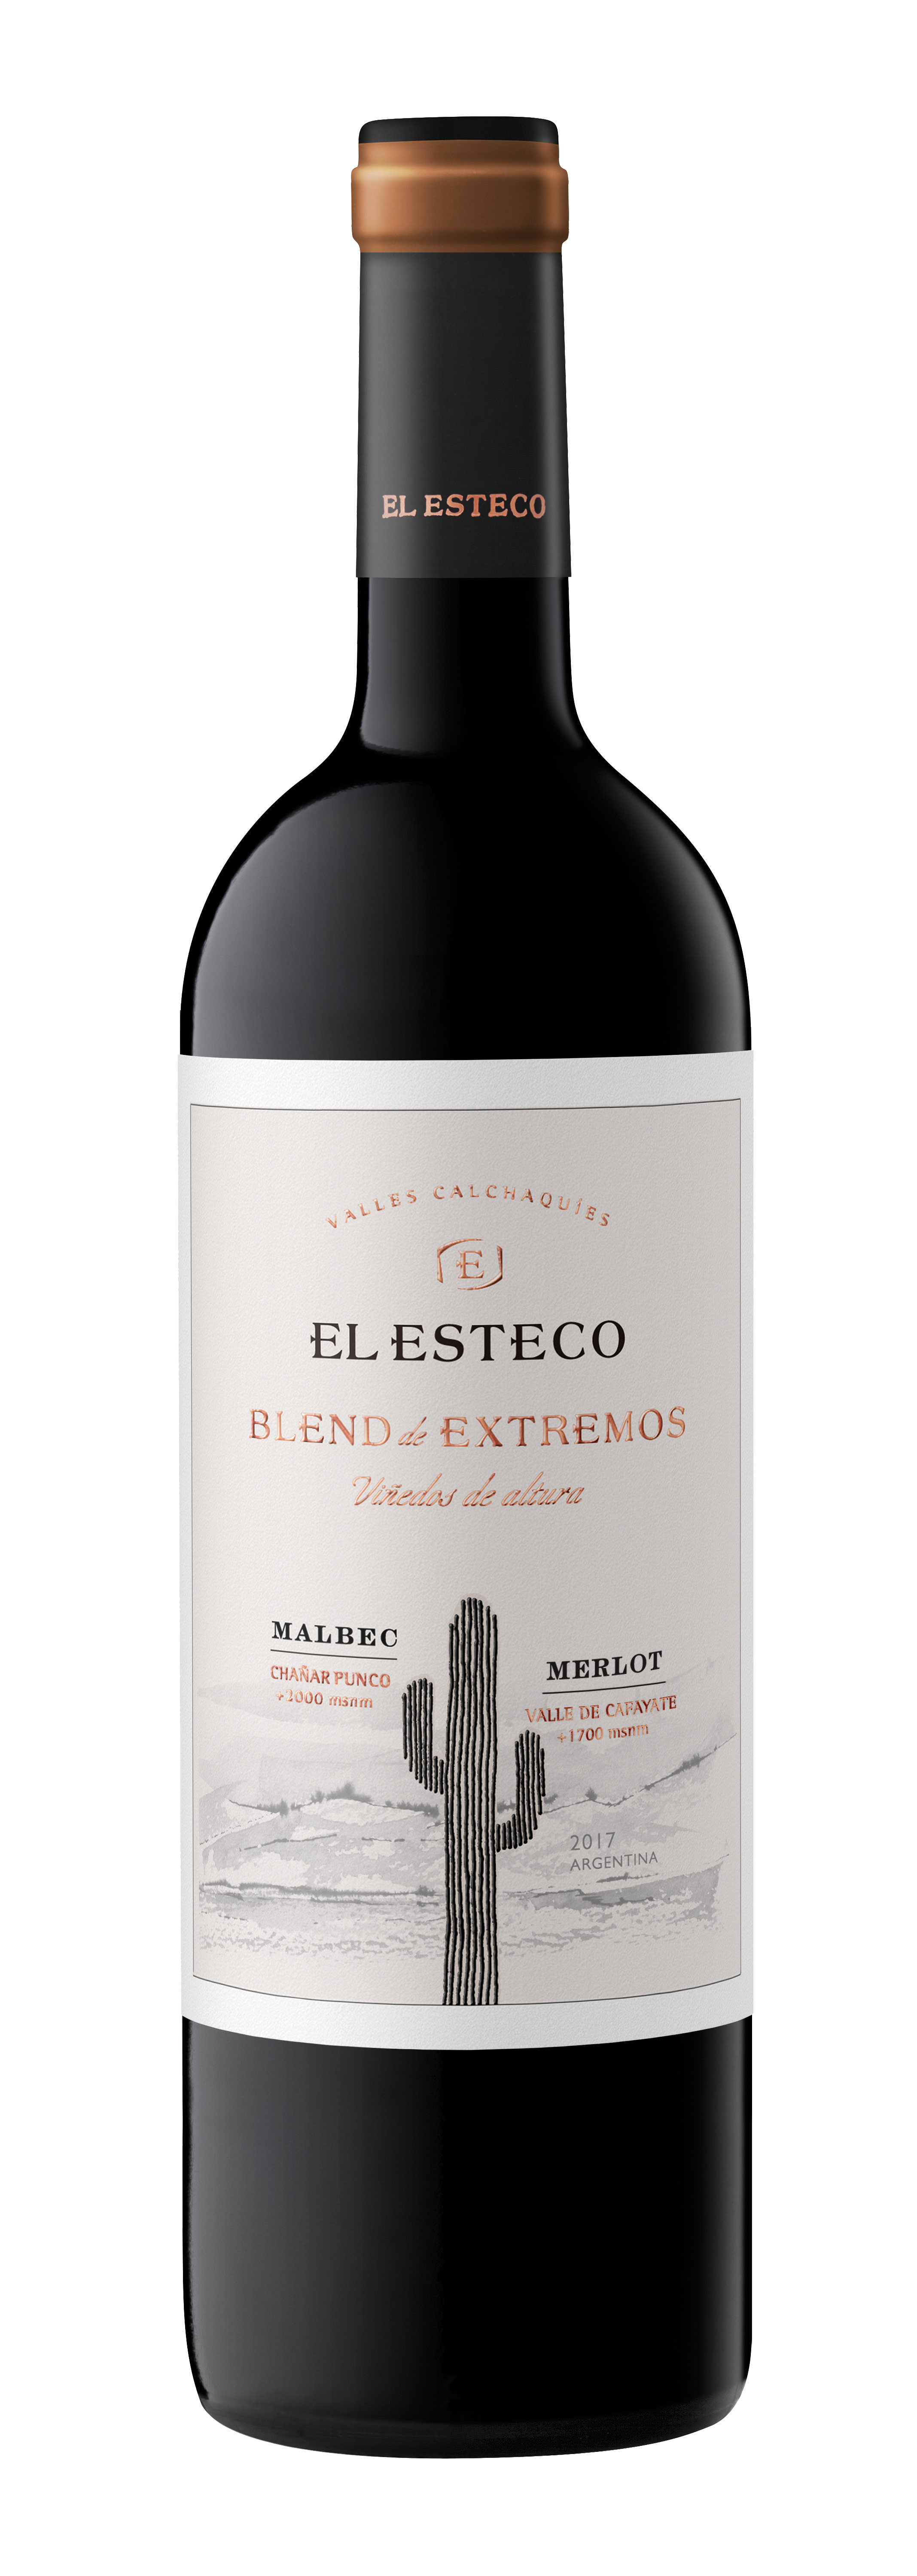 https://elesteco.com.ar/wp-content/uploads/2020/06/EL-ESTECO-Blend-de-Extremos-malbec-merlot-recortada-png.png